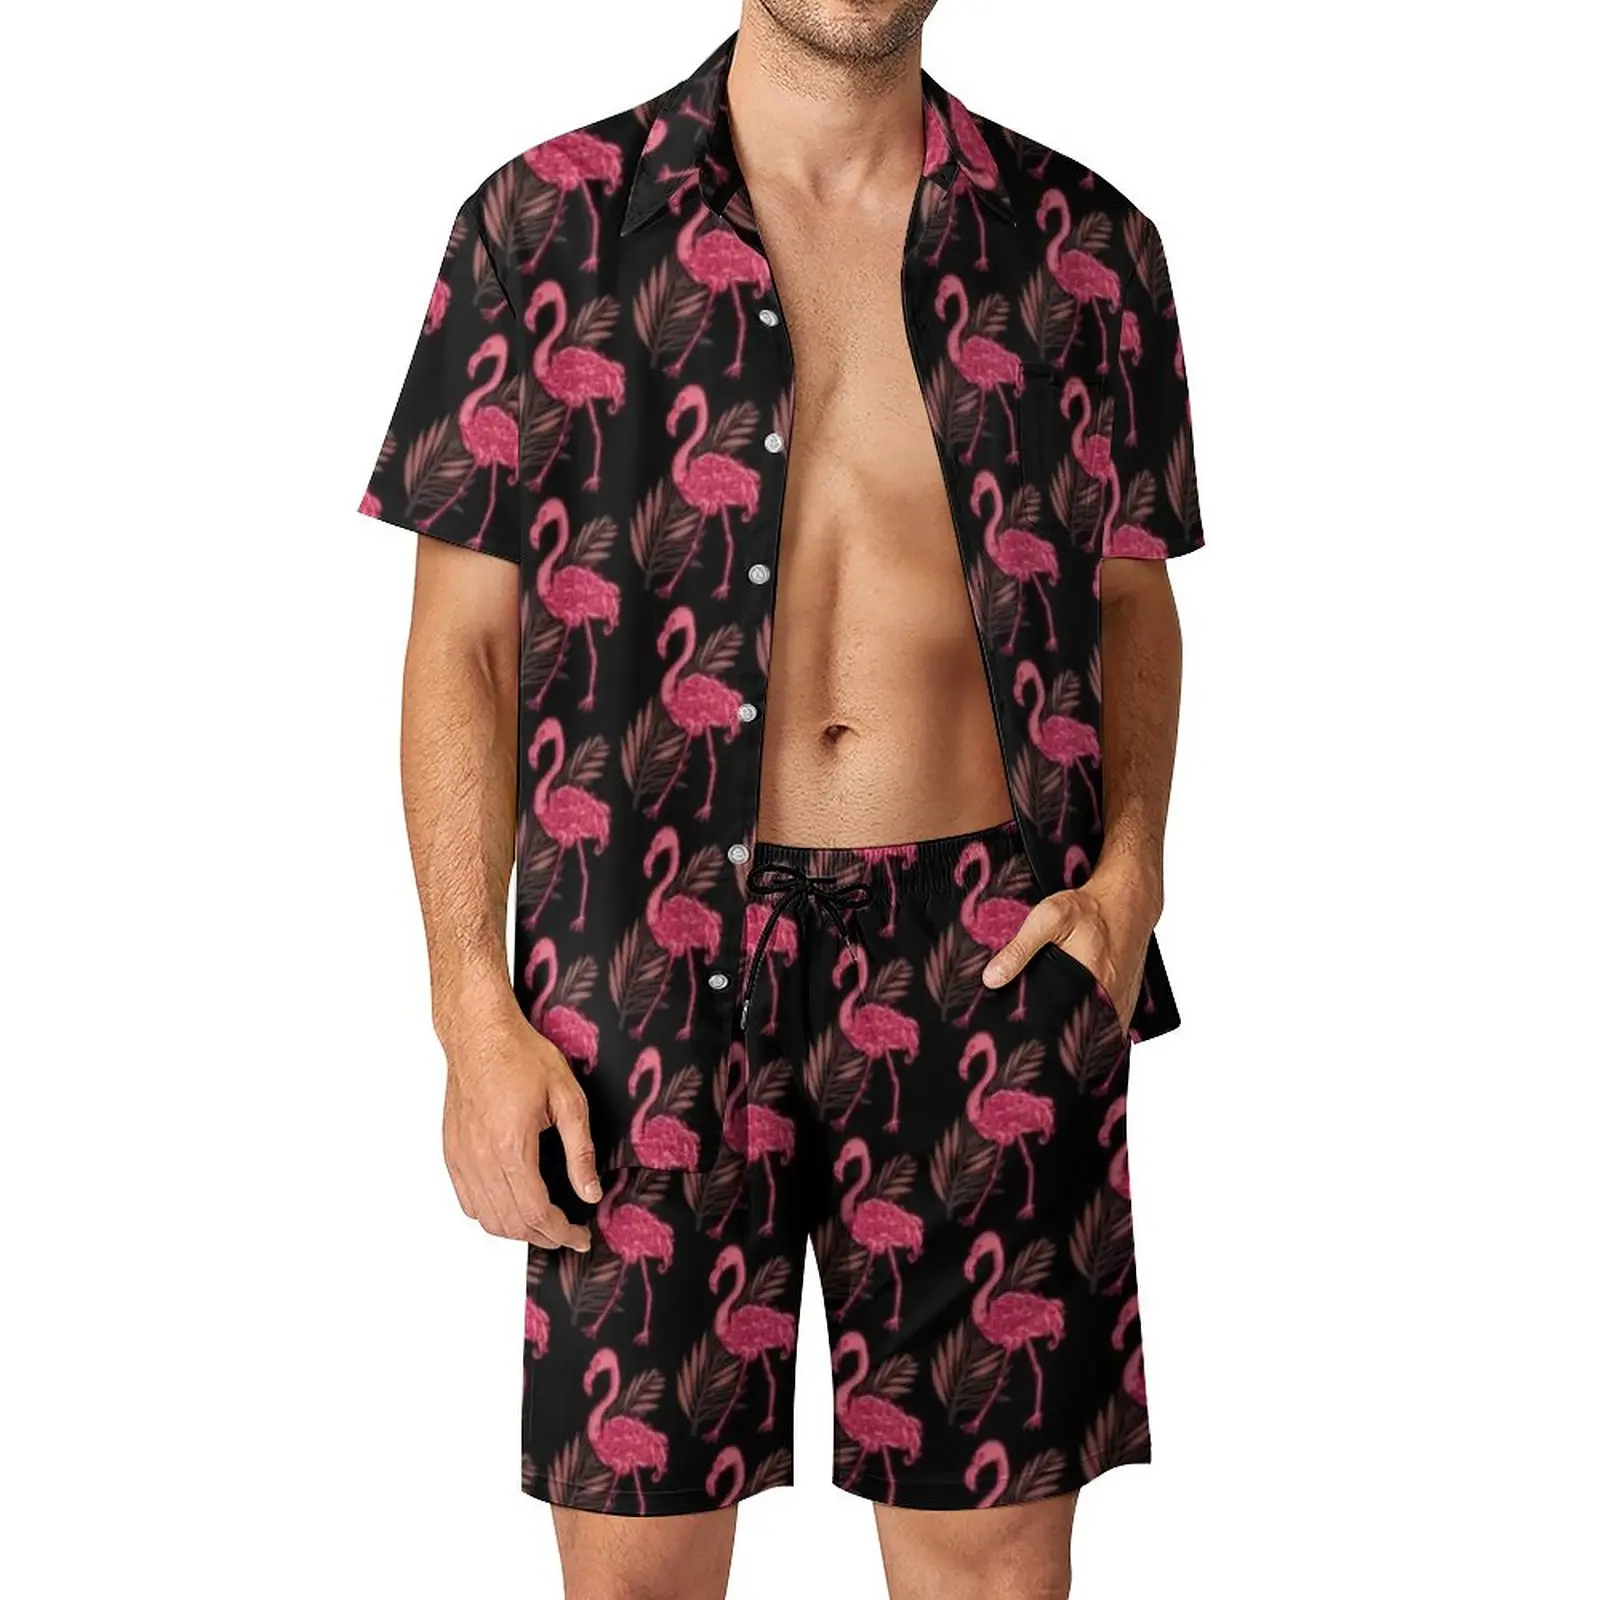 

Мужские комплекты с фламинго, повседневные шорты с изображением животных, Листьев, растений, Летний Пляжный комплект гавайской рубашки с коротким рукавом, фотографический костюм, подарок